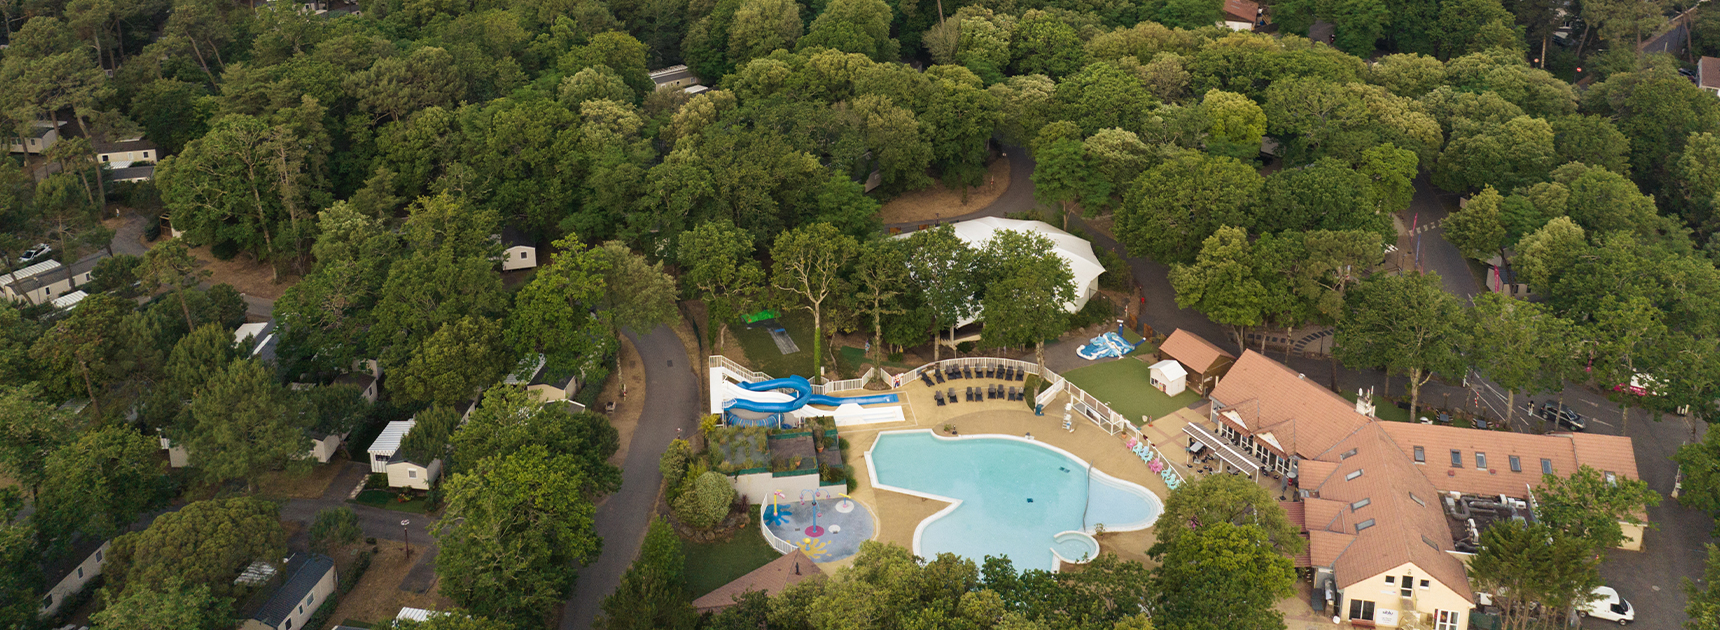 La piscine de du camping Les Pierres Couchées vu en drone